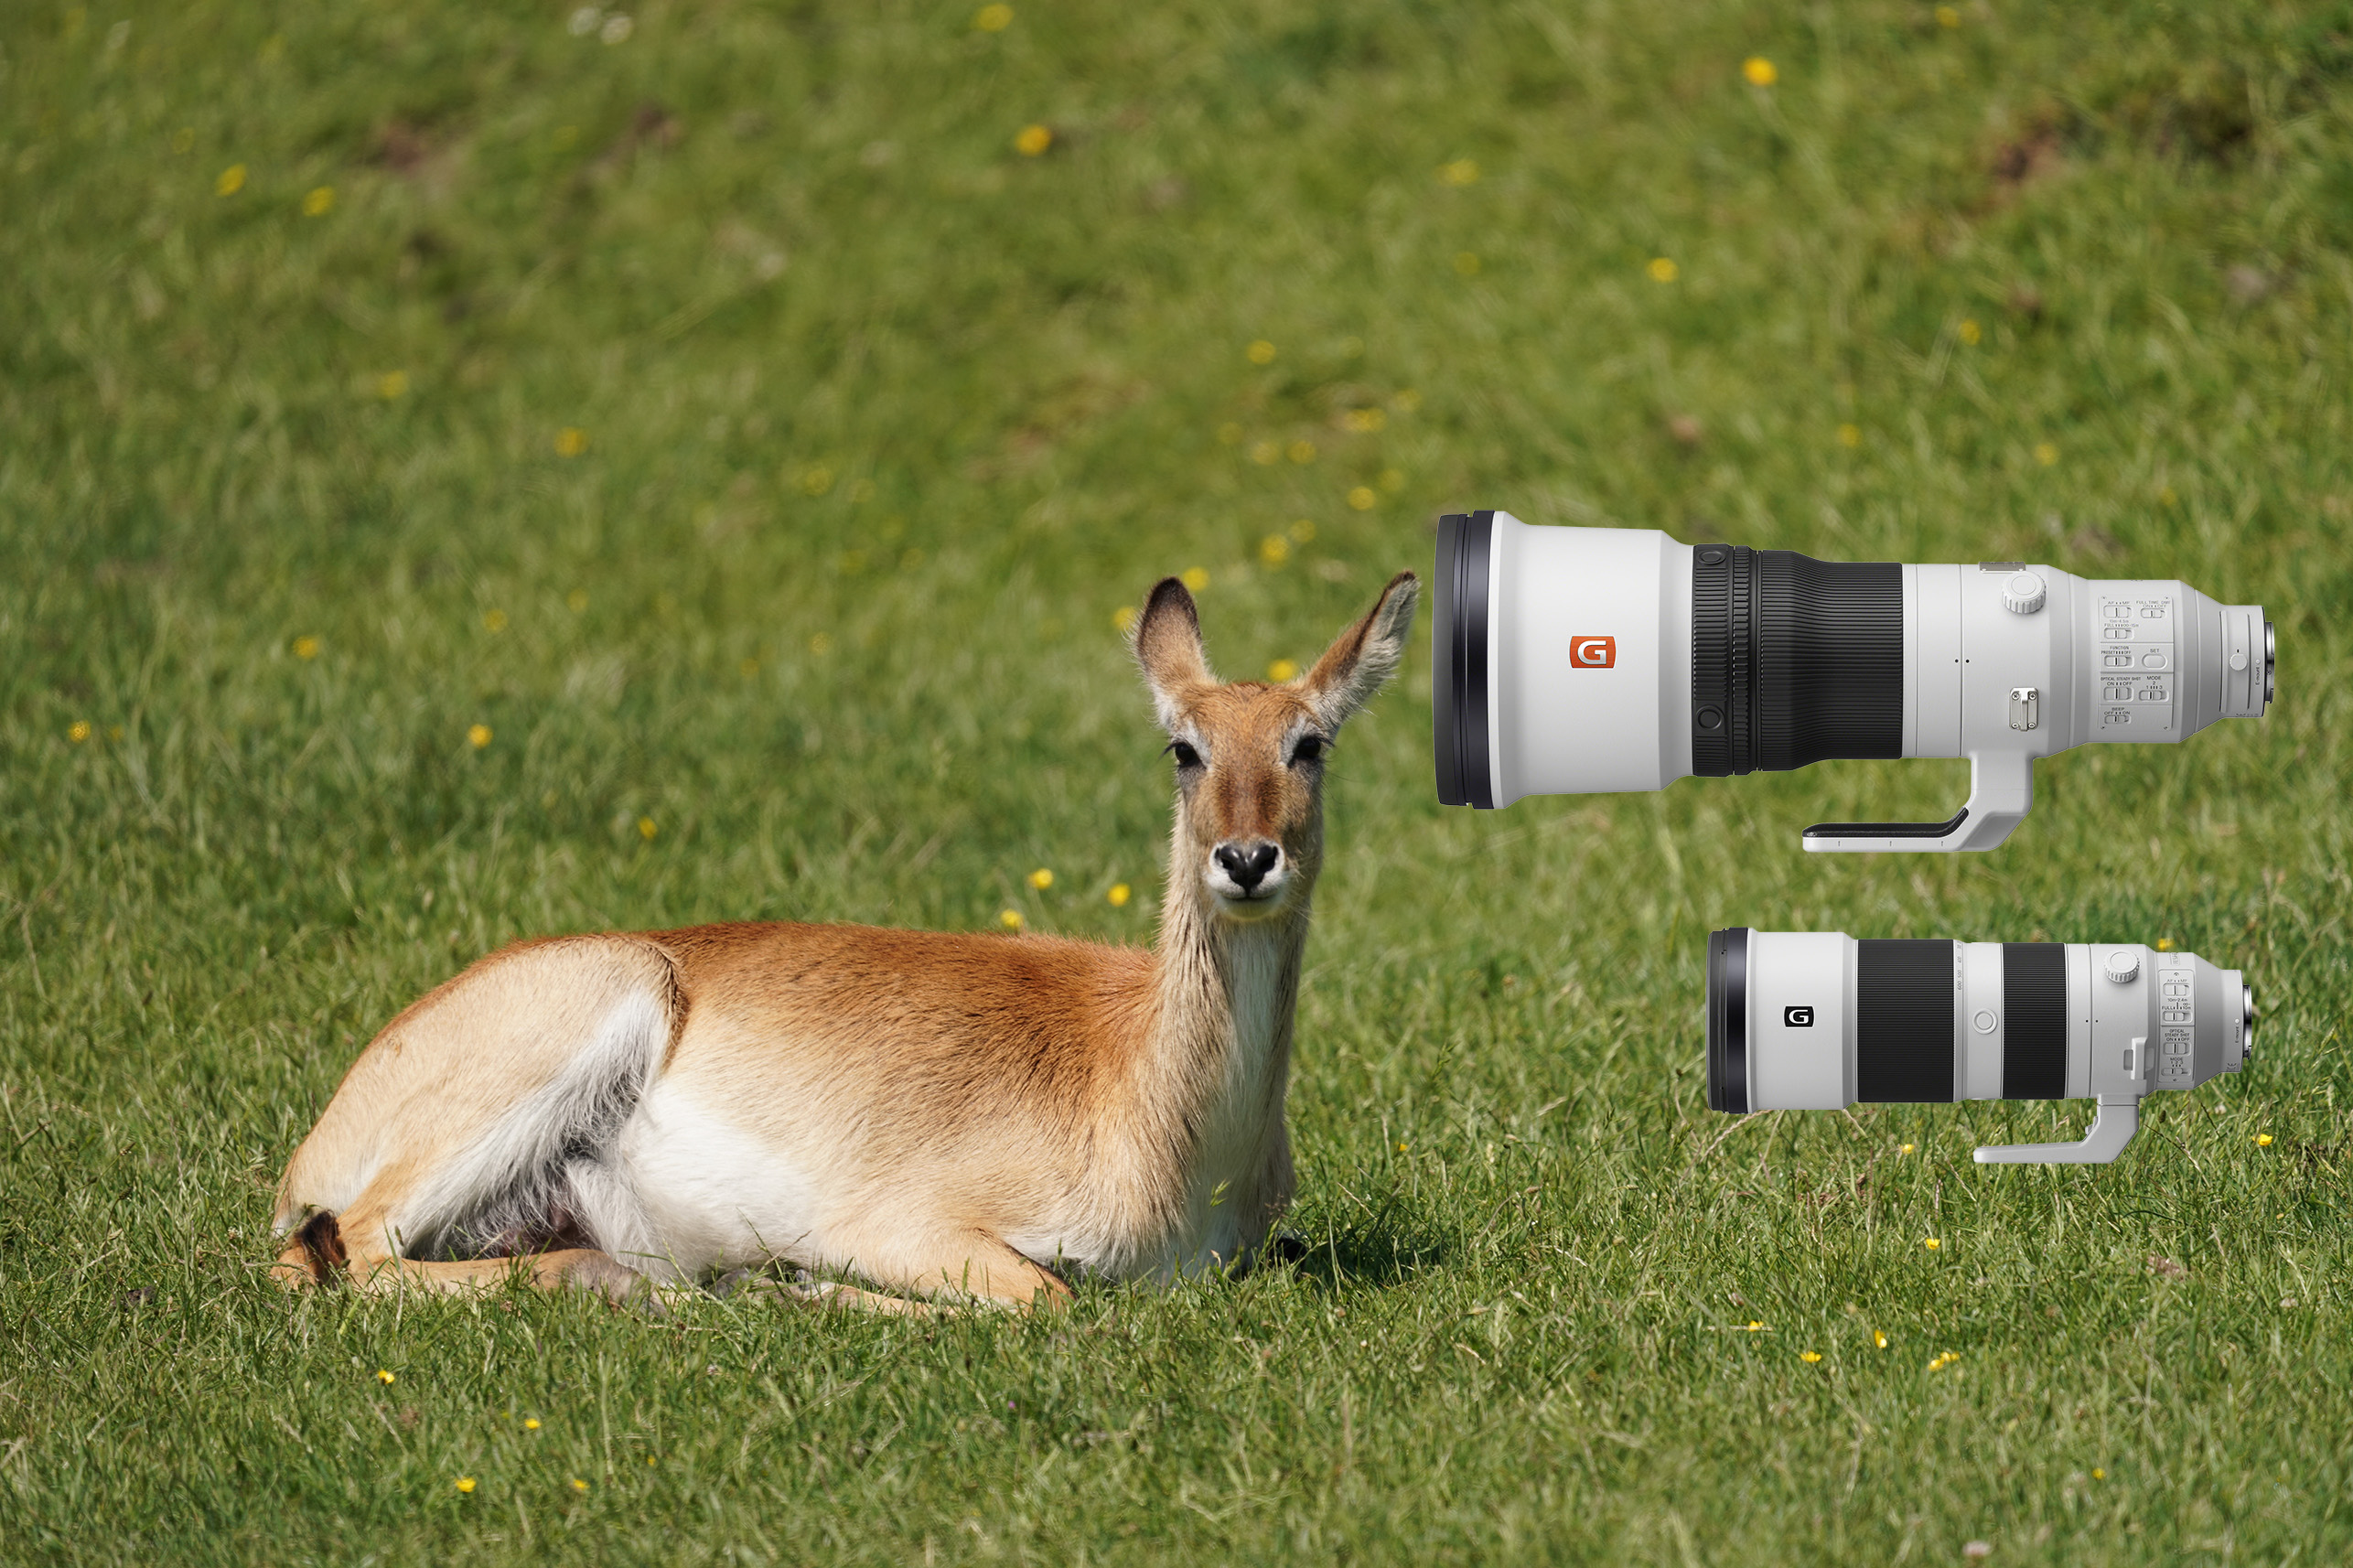 Die neuen Sony-Super-Teles eignen sich u.a. sehr gut für Tierfotografie.